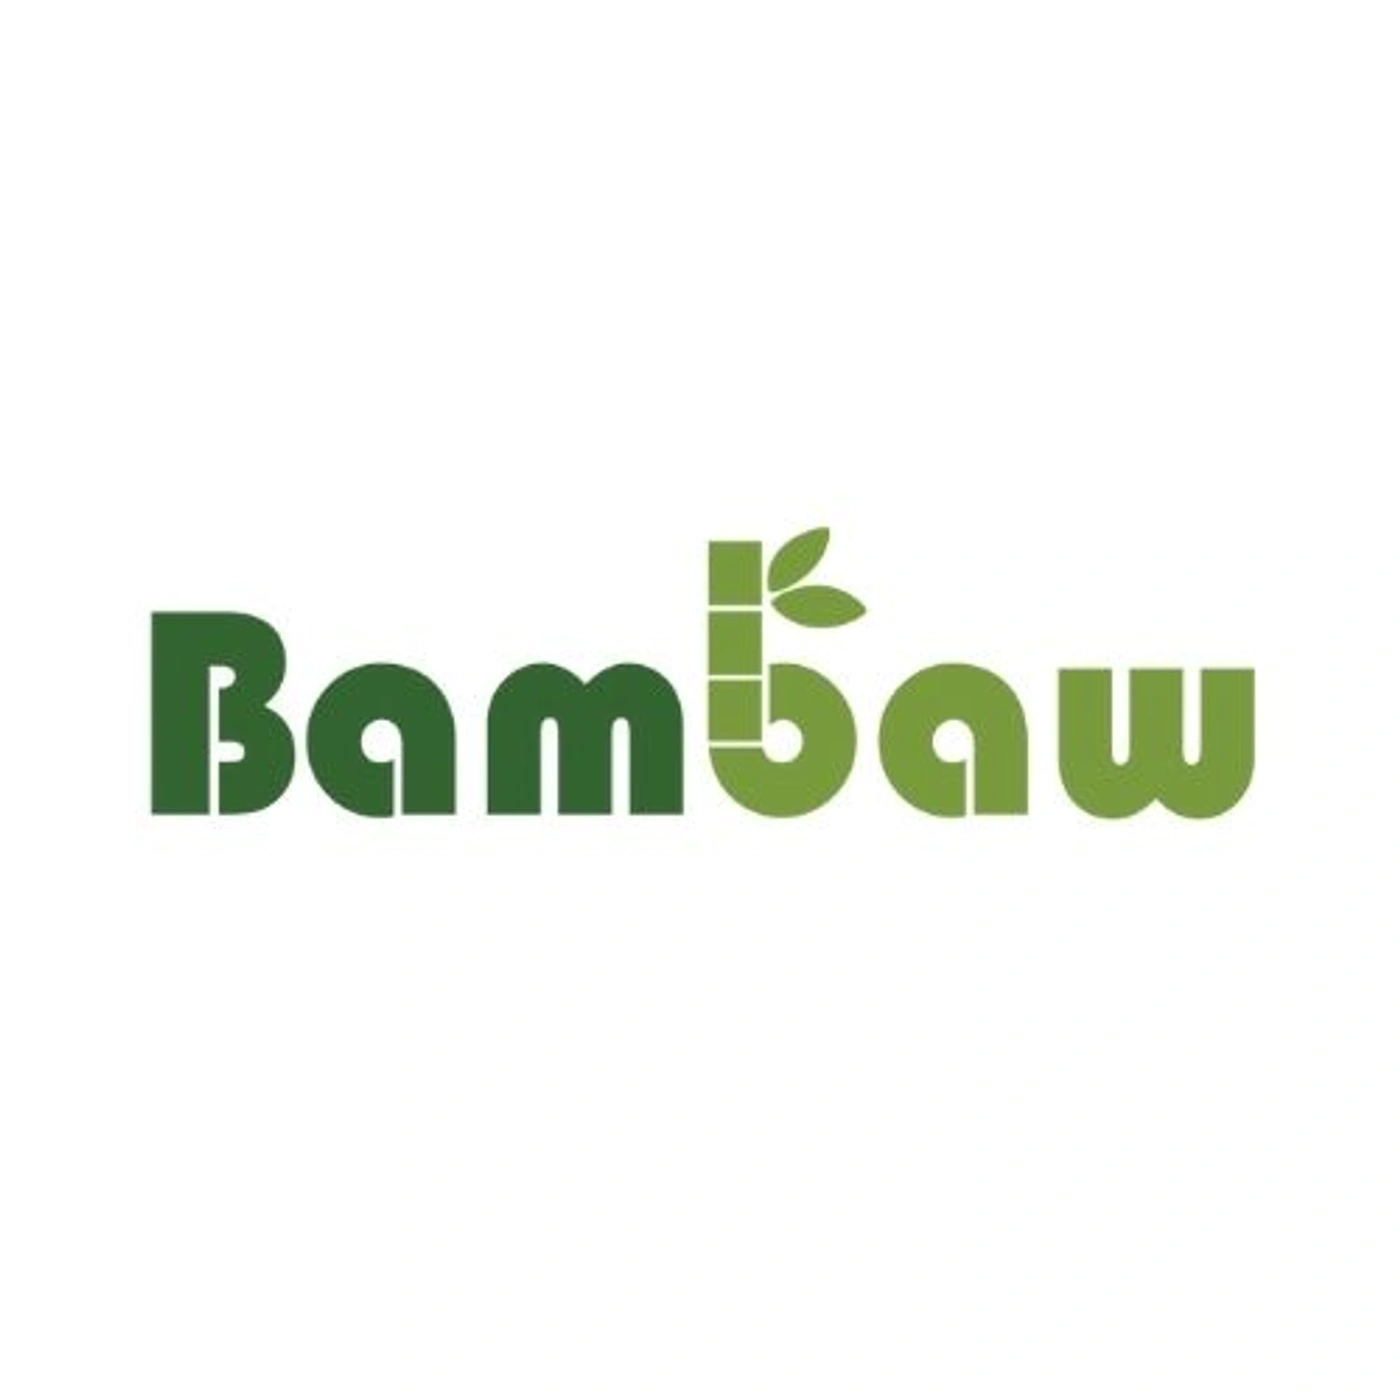 image de l'entreprise Bambaw pour le poste de Stagiaire Sales & Marketing - Barcelone